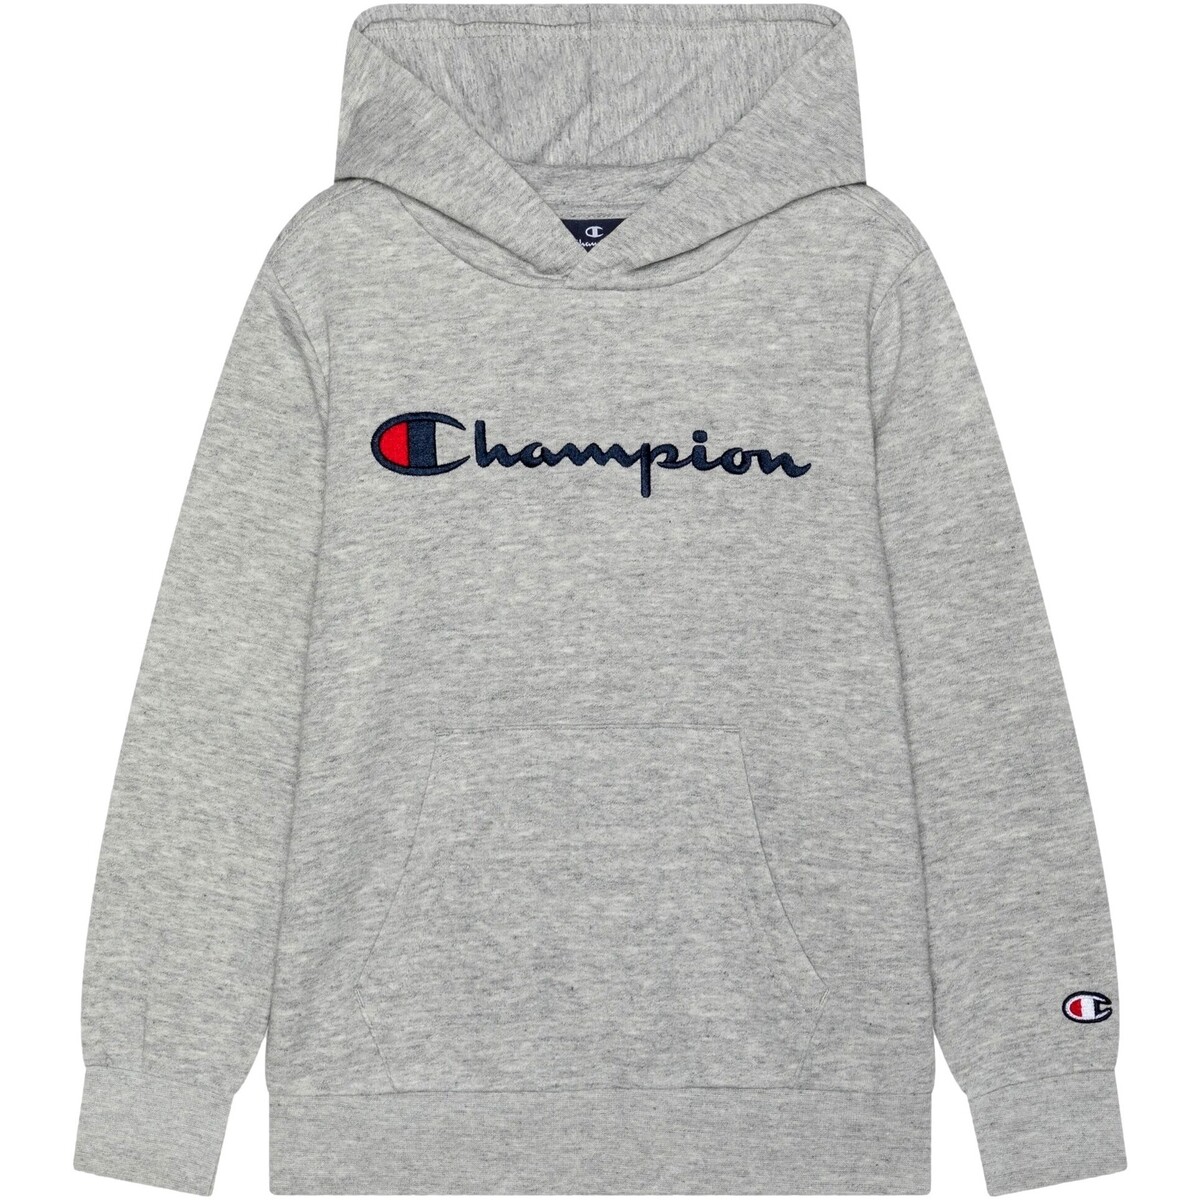 Odjeća Djeca Sportske majice Champion  Siva